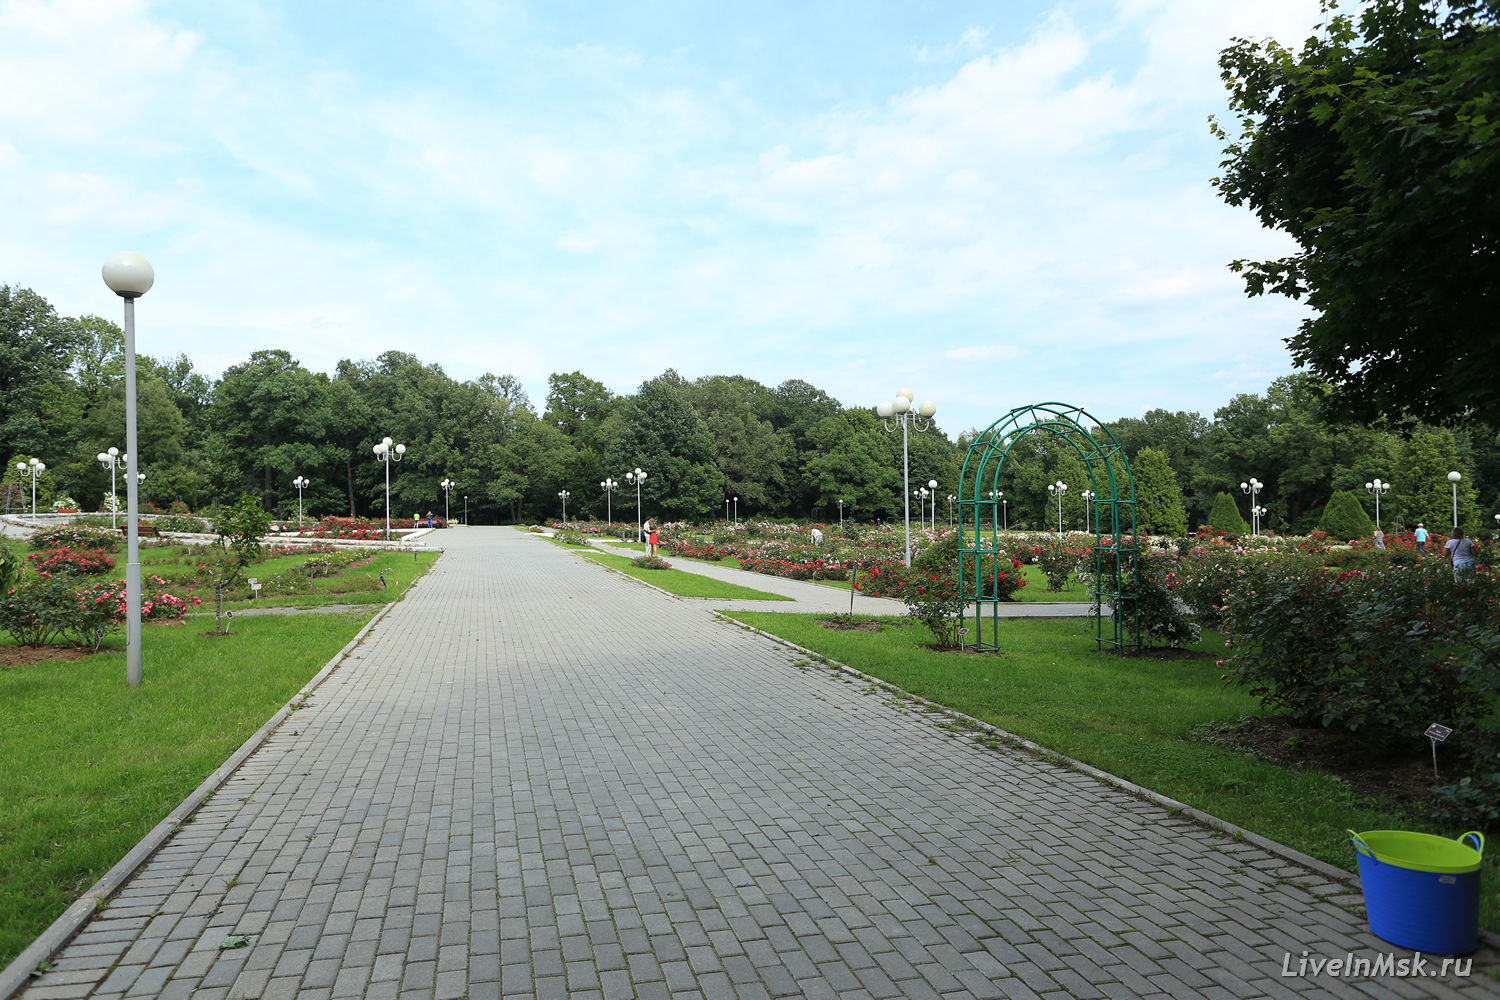 Розарий главного ботанического сада, фото 2014 года